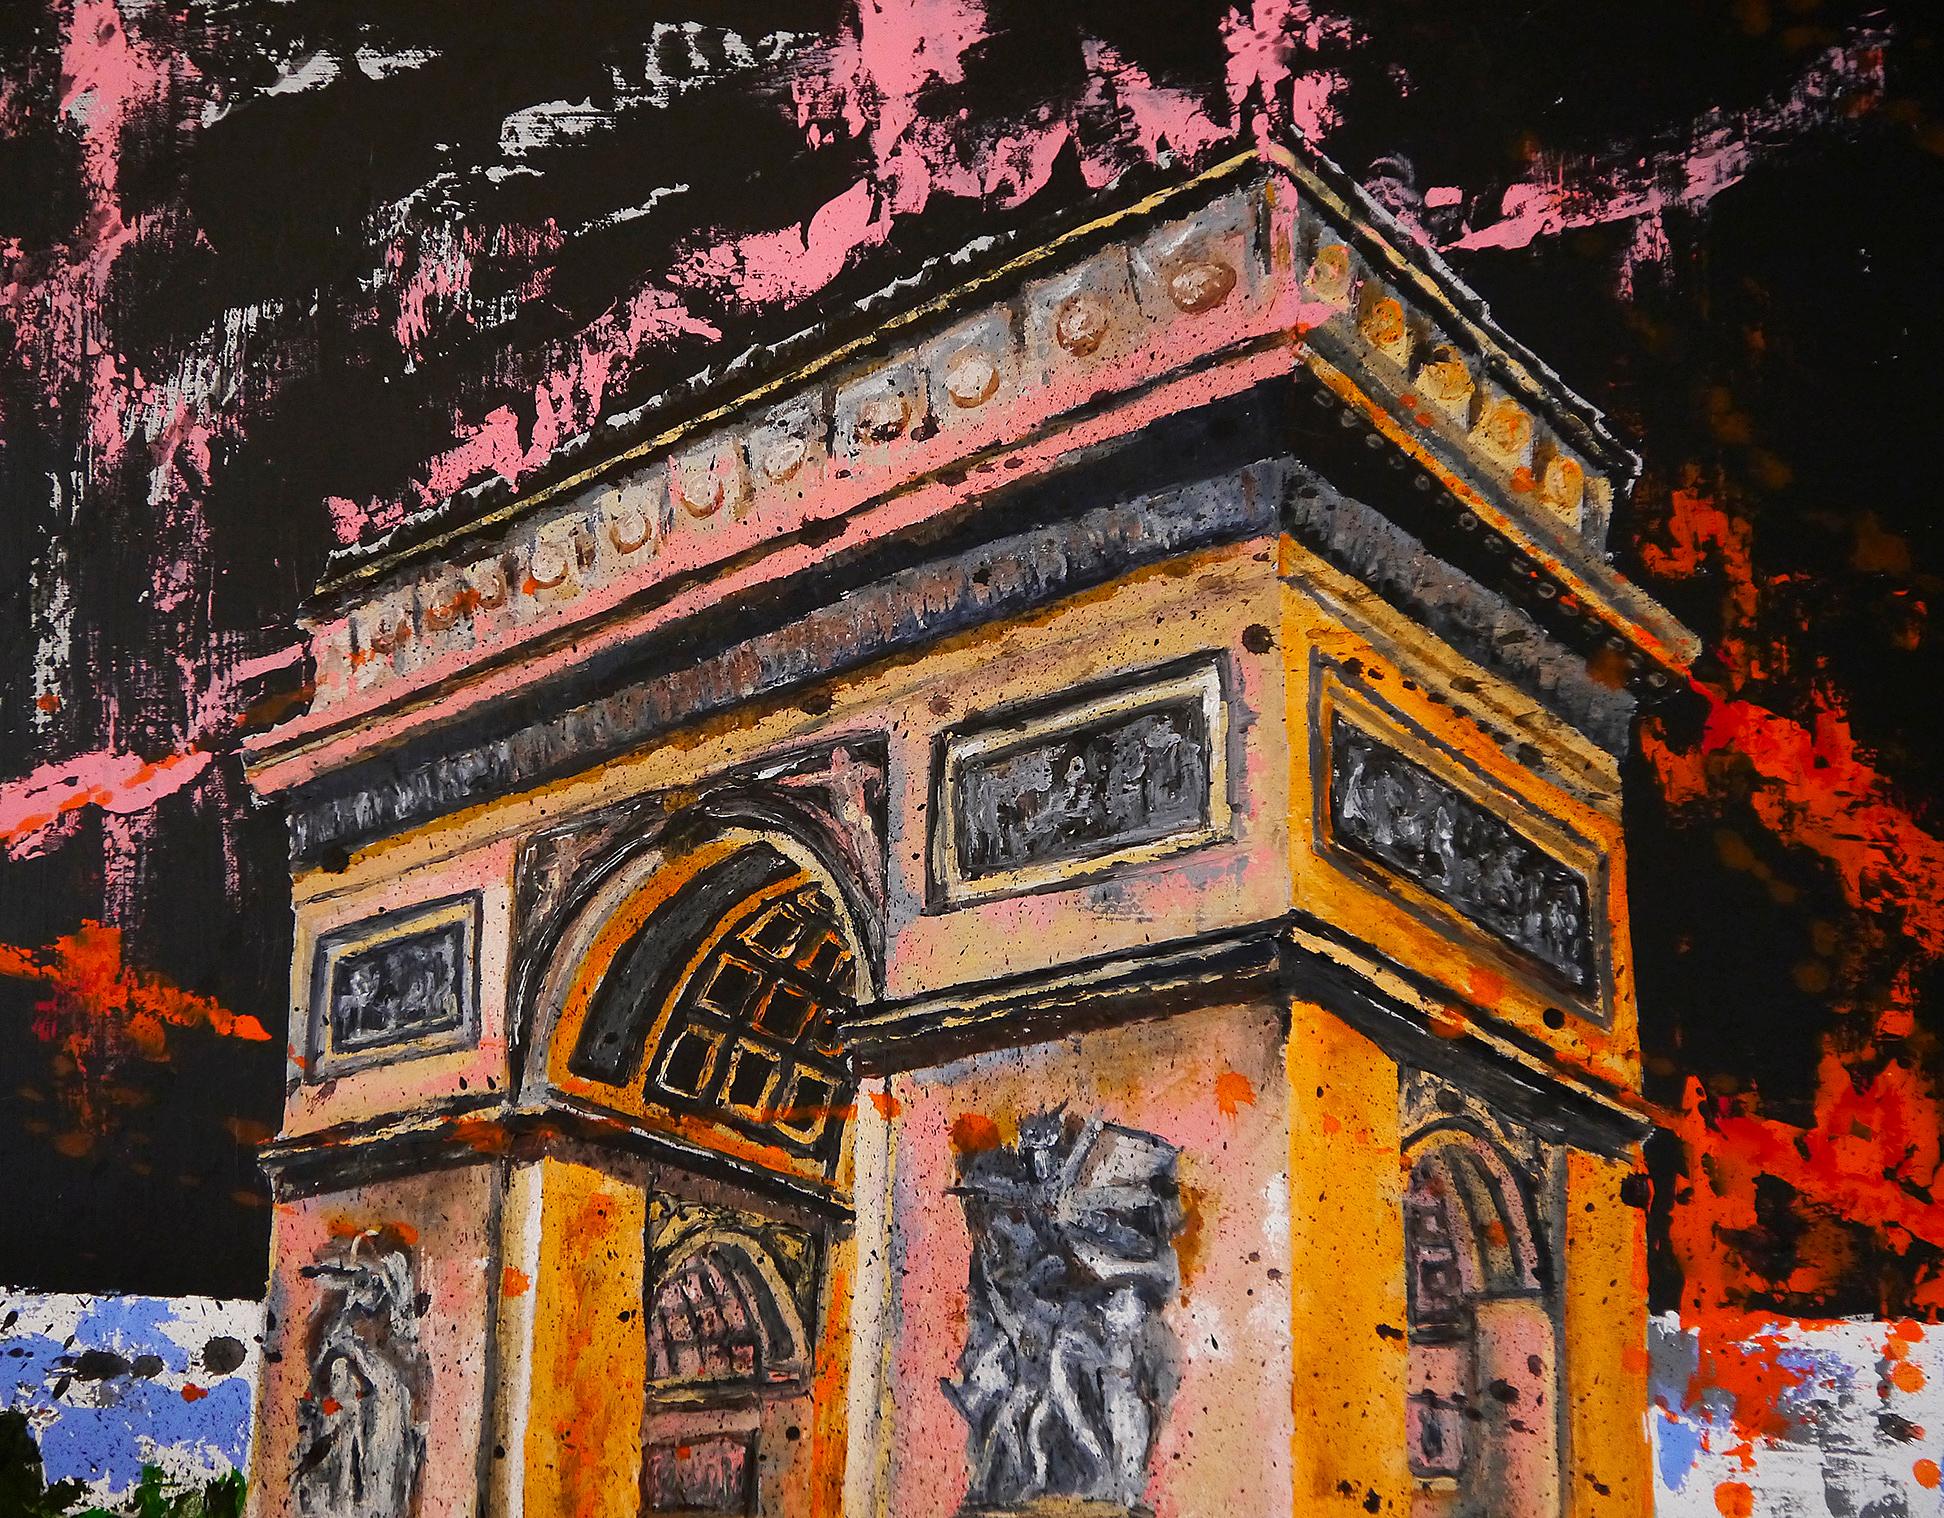 Paysage Arc de Triomphe à Paris

Les gouttes et les gestes pour créer cette pièce contrastent avec l'architecture académique de Paris.
Technique : Acrylique, peinture à l'huile, encre de Chine sur toile 73x60cm /28,7x23,6in

》》R E A D Y -- T O -- H